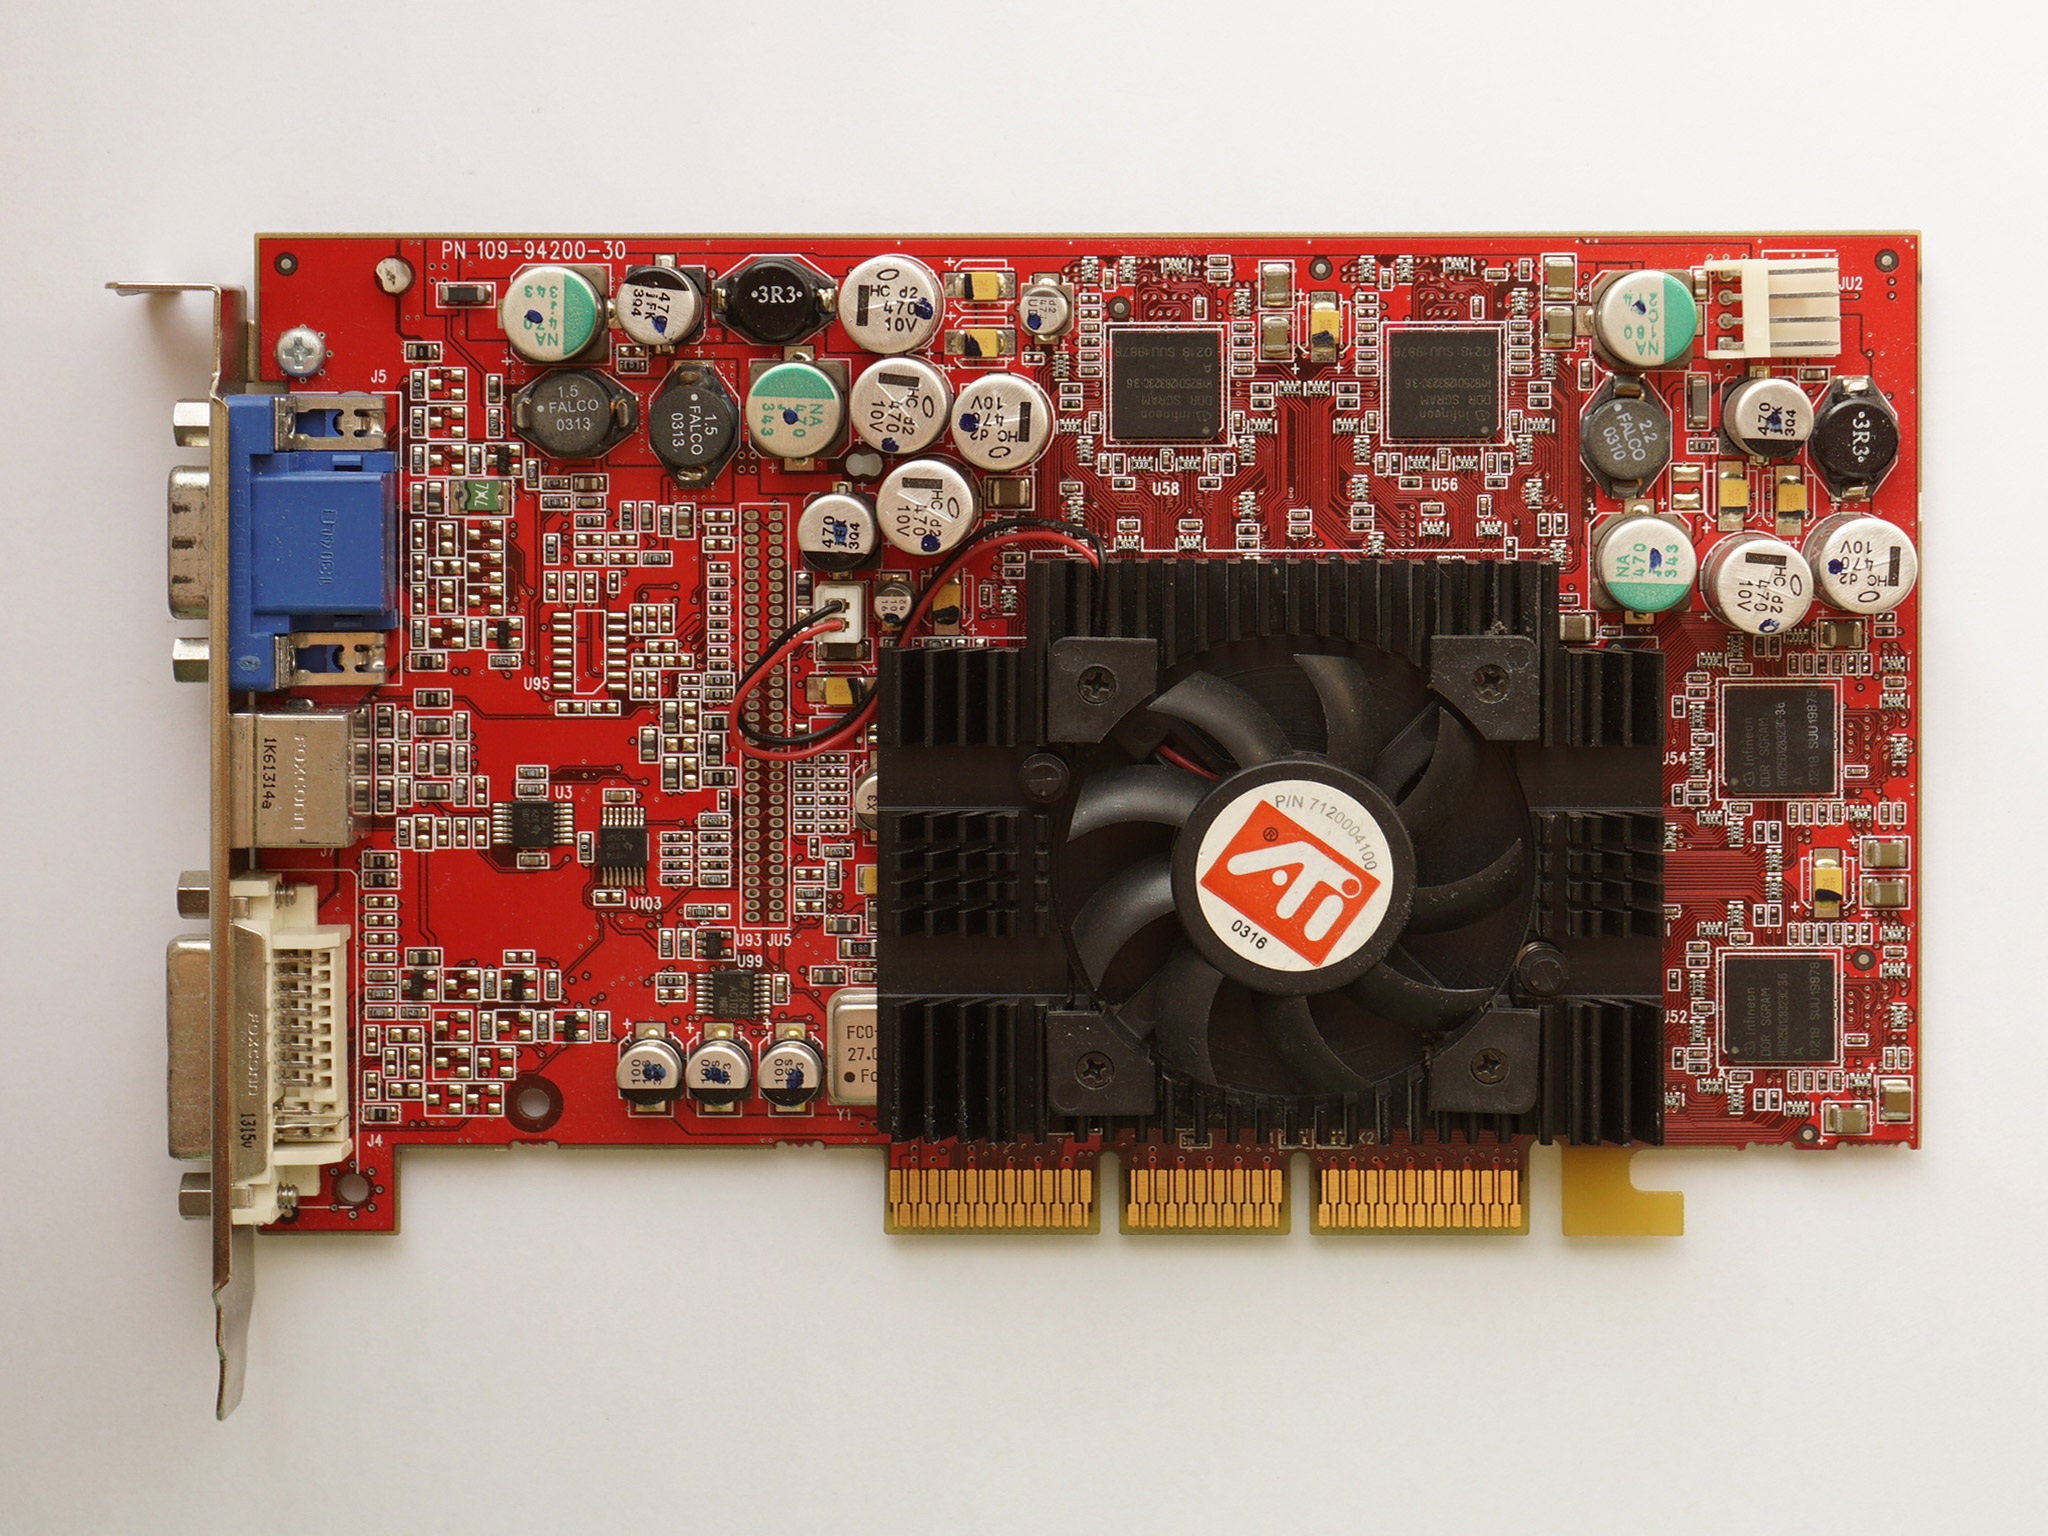 ATI ATI Radeon 9500 128MB 109-94200-30 AGP DDR 